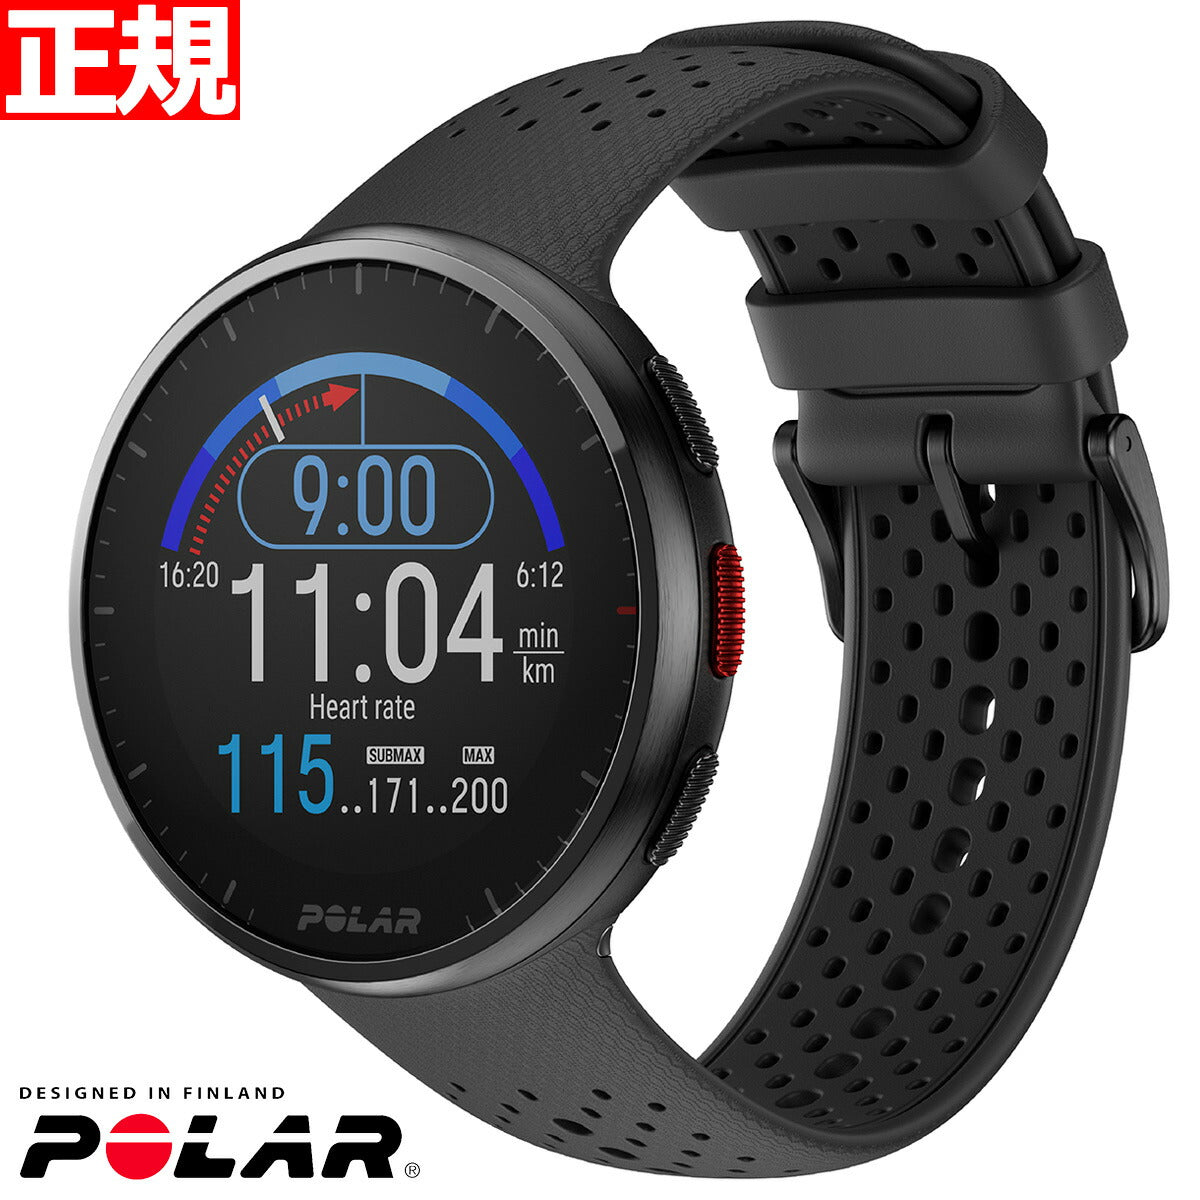 ポラール POLAR PACER PRO スマートウォッチ GPS 心拍 トレーニング ランニング マラソン 腕時計 ぺーサープロ カーボンブラック S-L 900102178 日本正規品